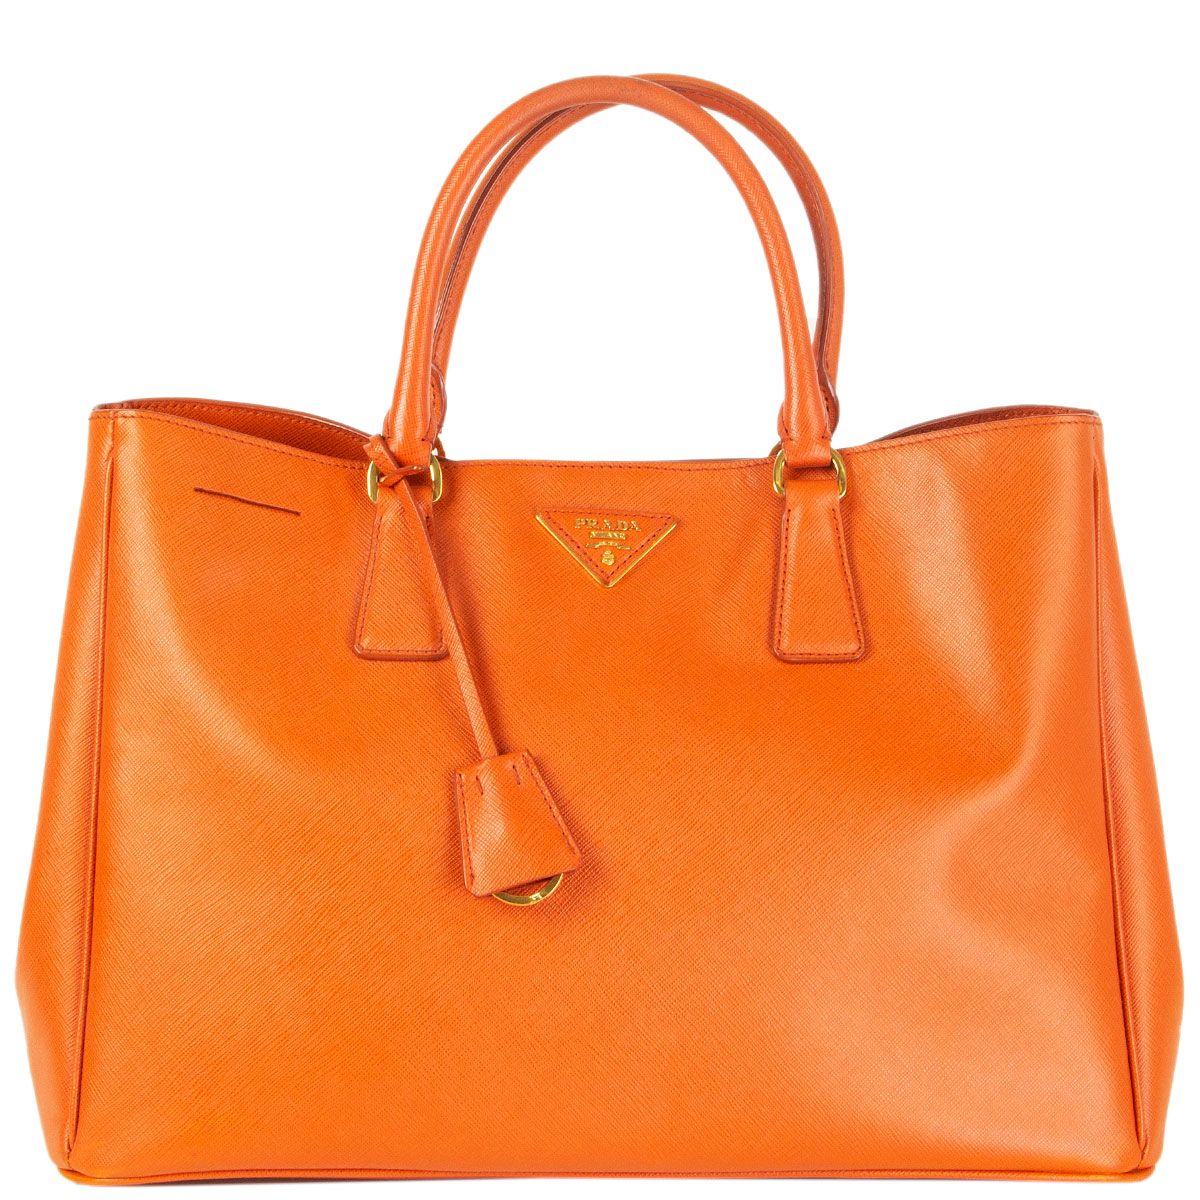 Authentic Prada Galleria Saffiano Leather Bag